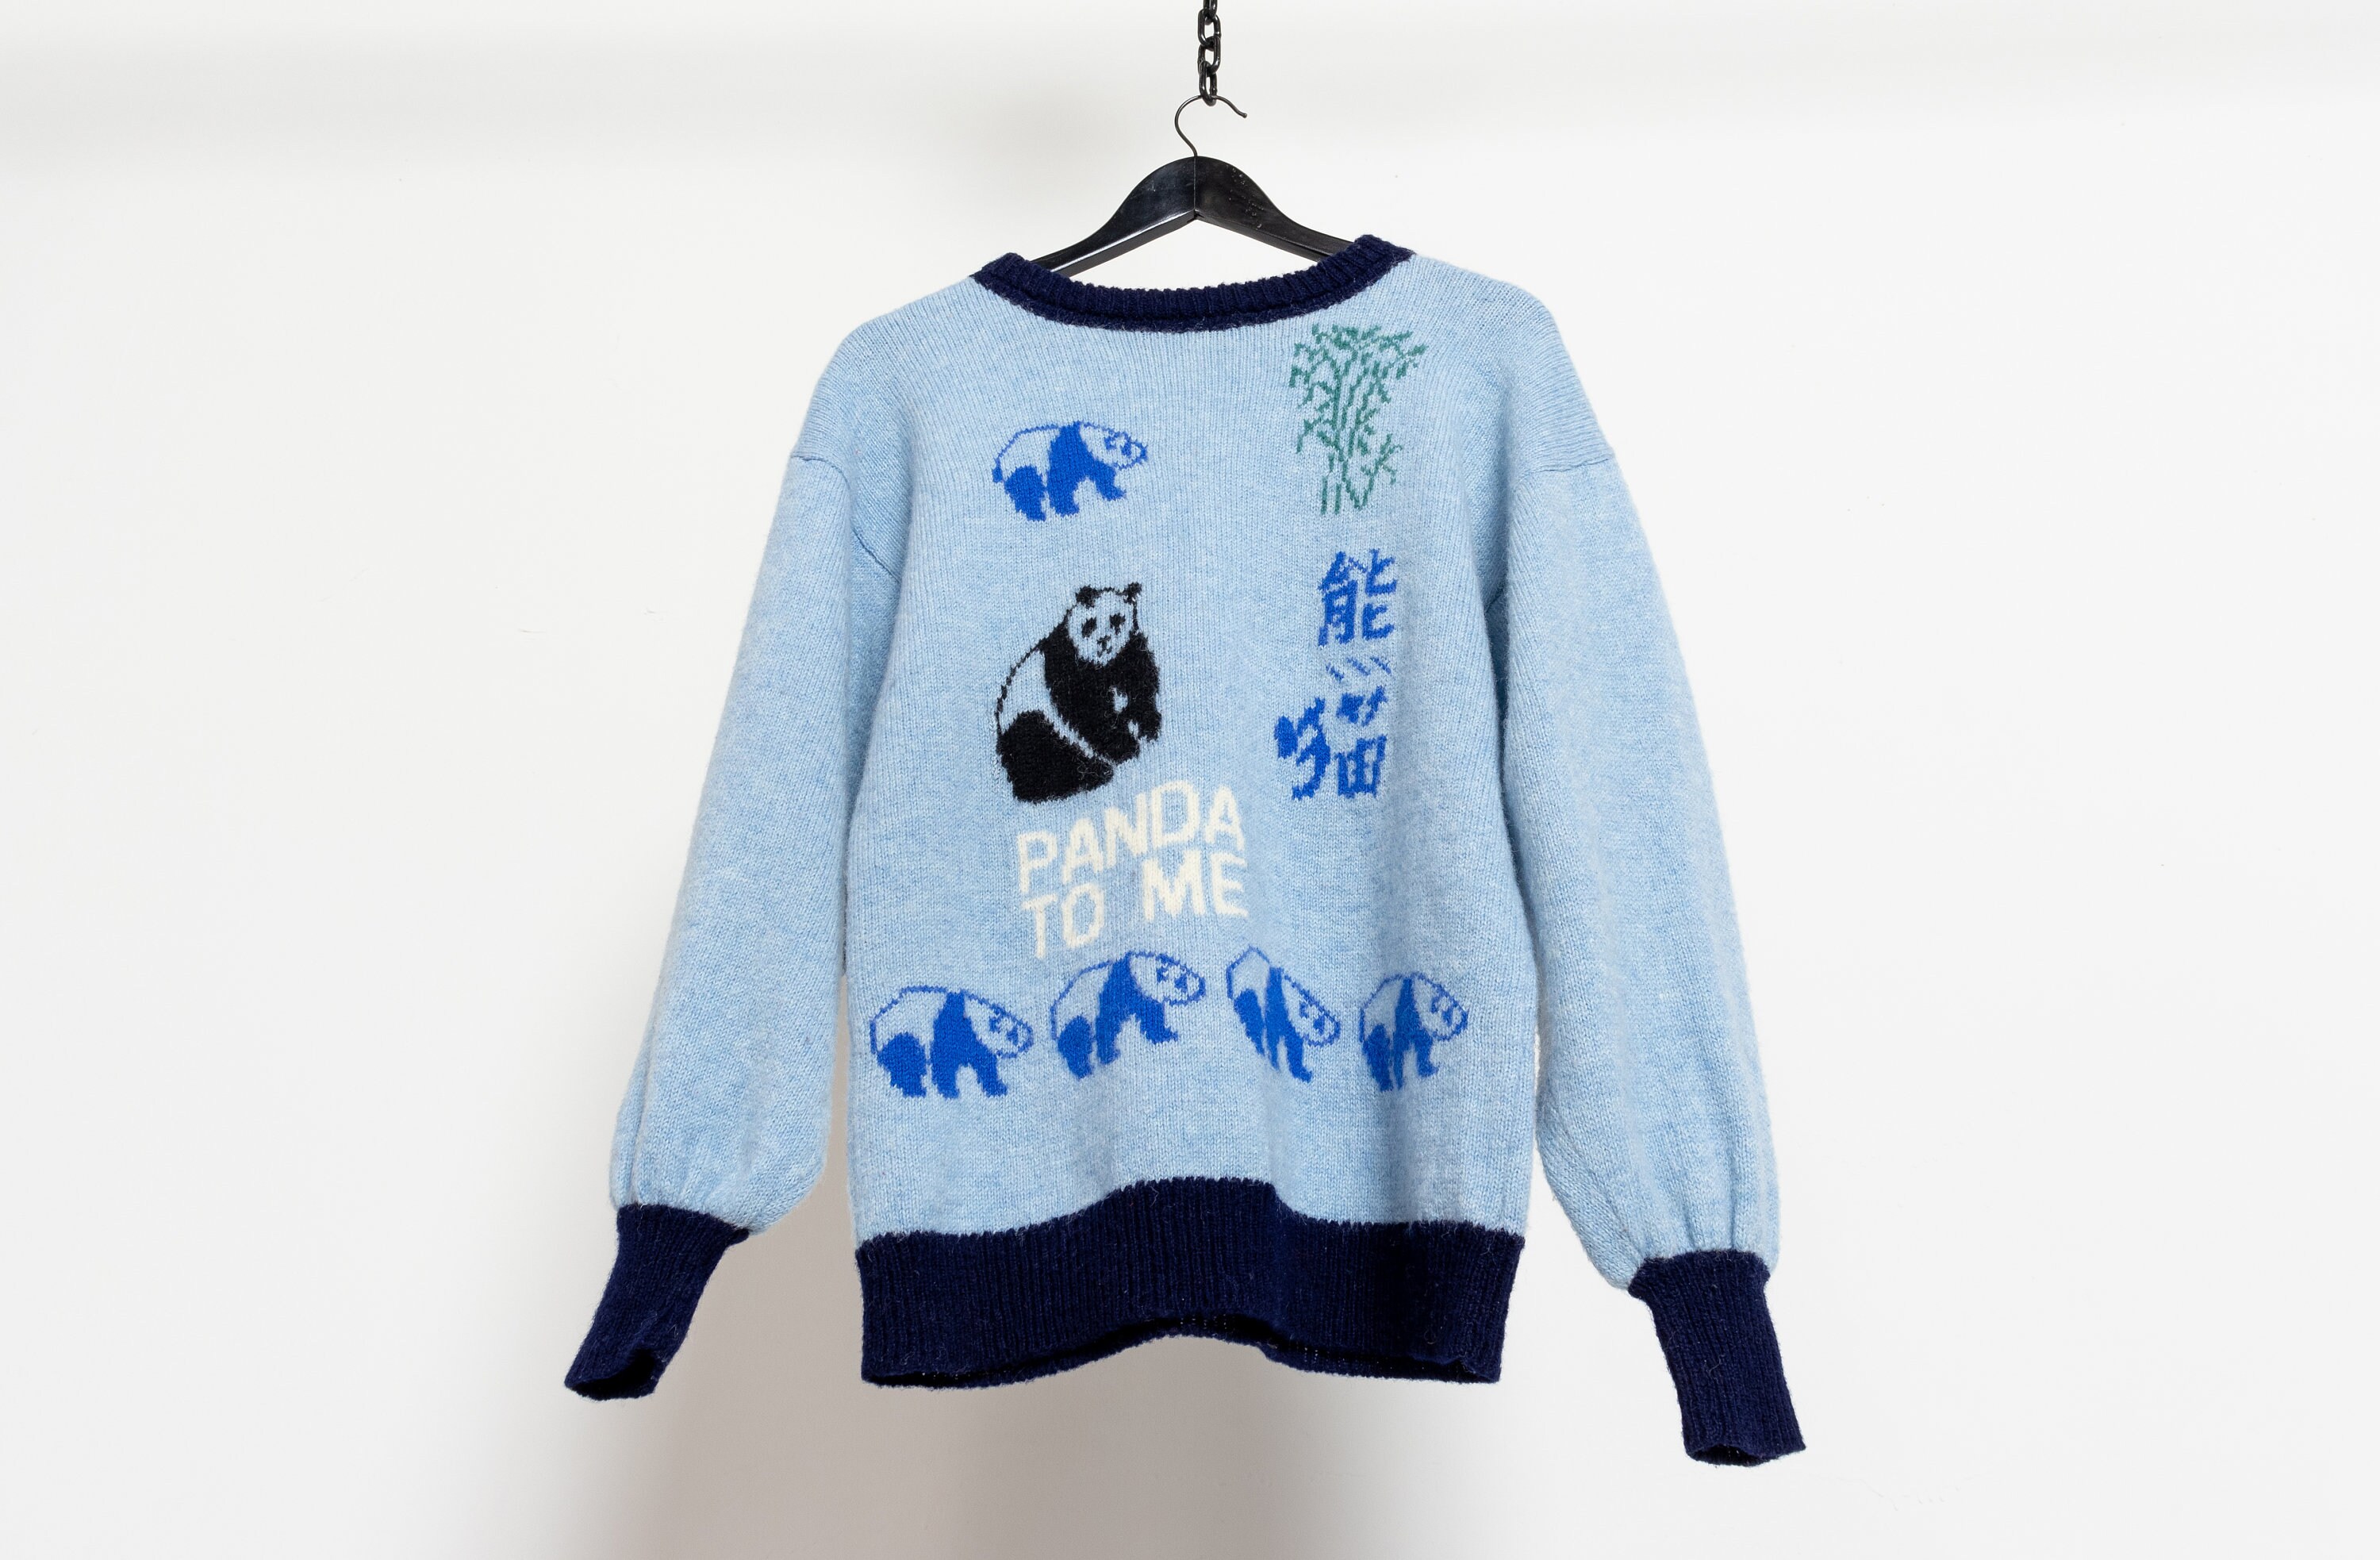 Kleding Dameskleding Sweaters Pullovers Medium WOL PANDA TRUI gebreide trui vintage gezellige herfst winter baby blauwe vrouwen 